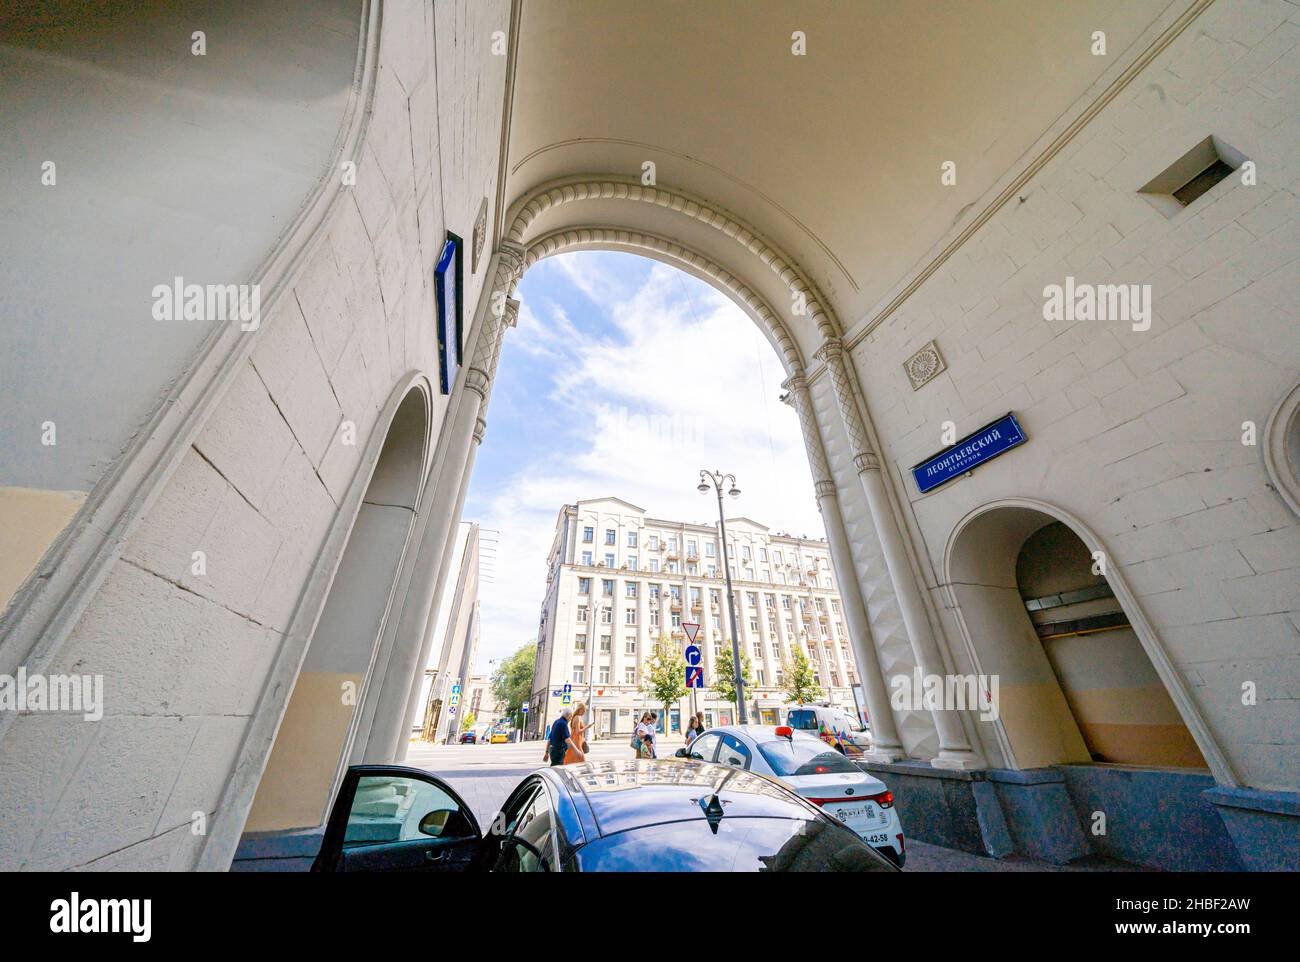 Stalinistischer Architekturbogen auf dem Gebäude Tverskaya 15, stalinistischer sozialistischer Klassizismus, Moskau, Russland Stockfoto